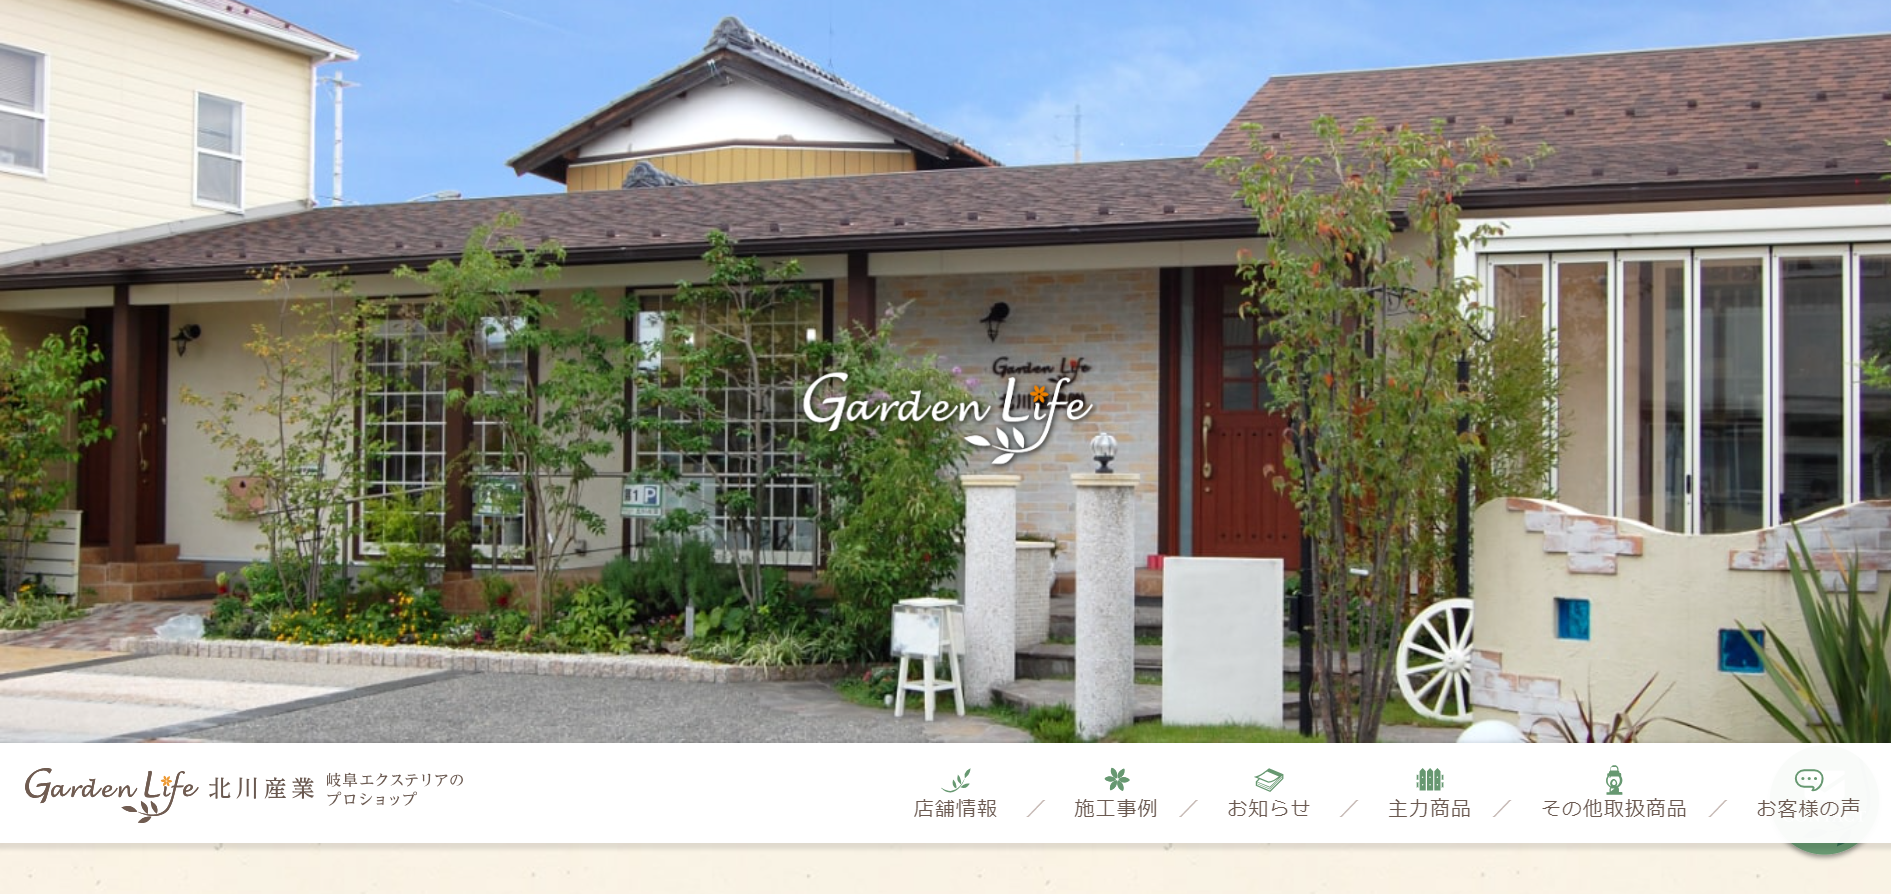 岐阜県で評判のおすすめ外構業者ランキング 第7位 Garden Life 北川産業